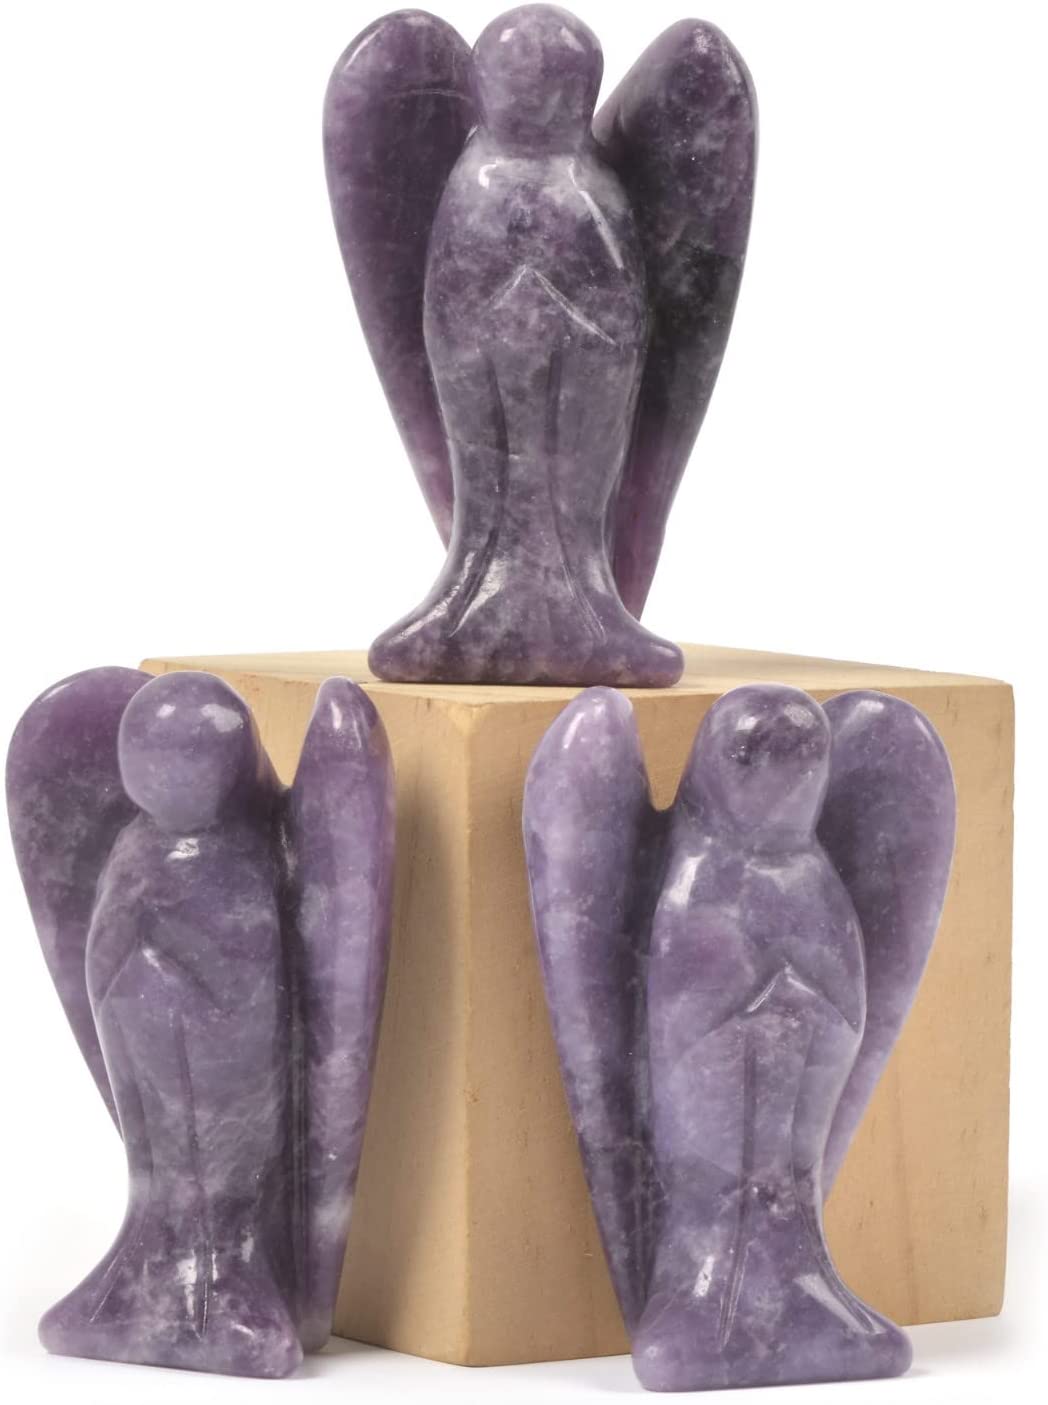 Reikistal Justinstones Carved Black Obsidian Gemstone Peace Angel Pocket Guardian Angel Healing Statue 2 inch